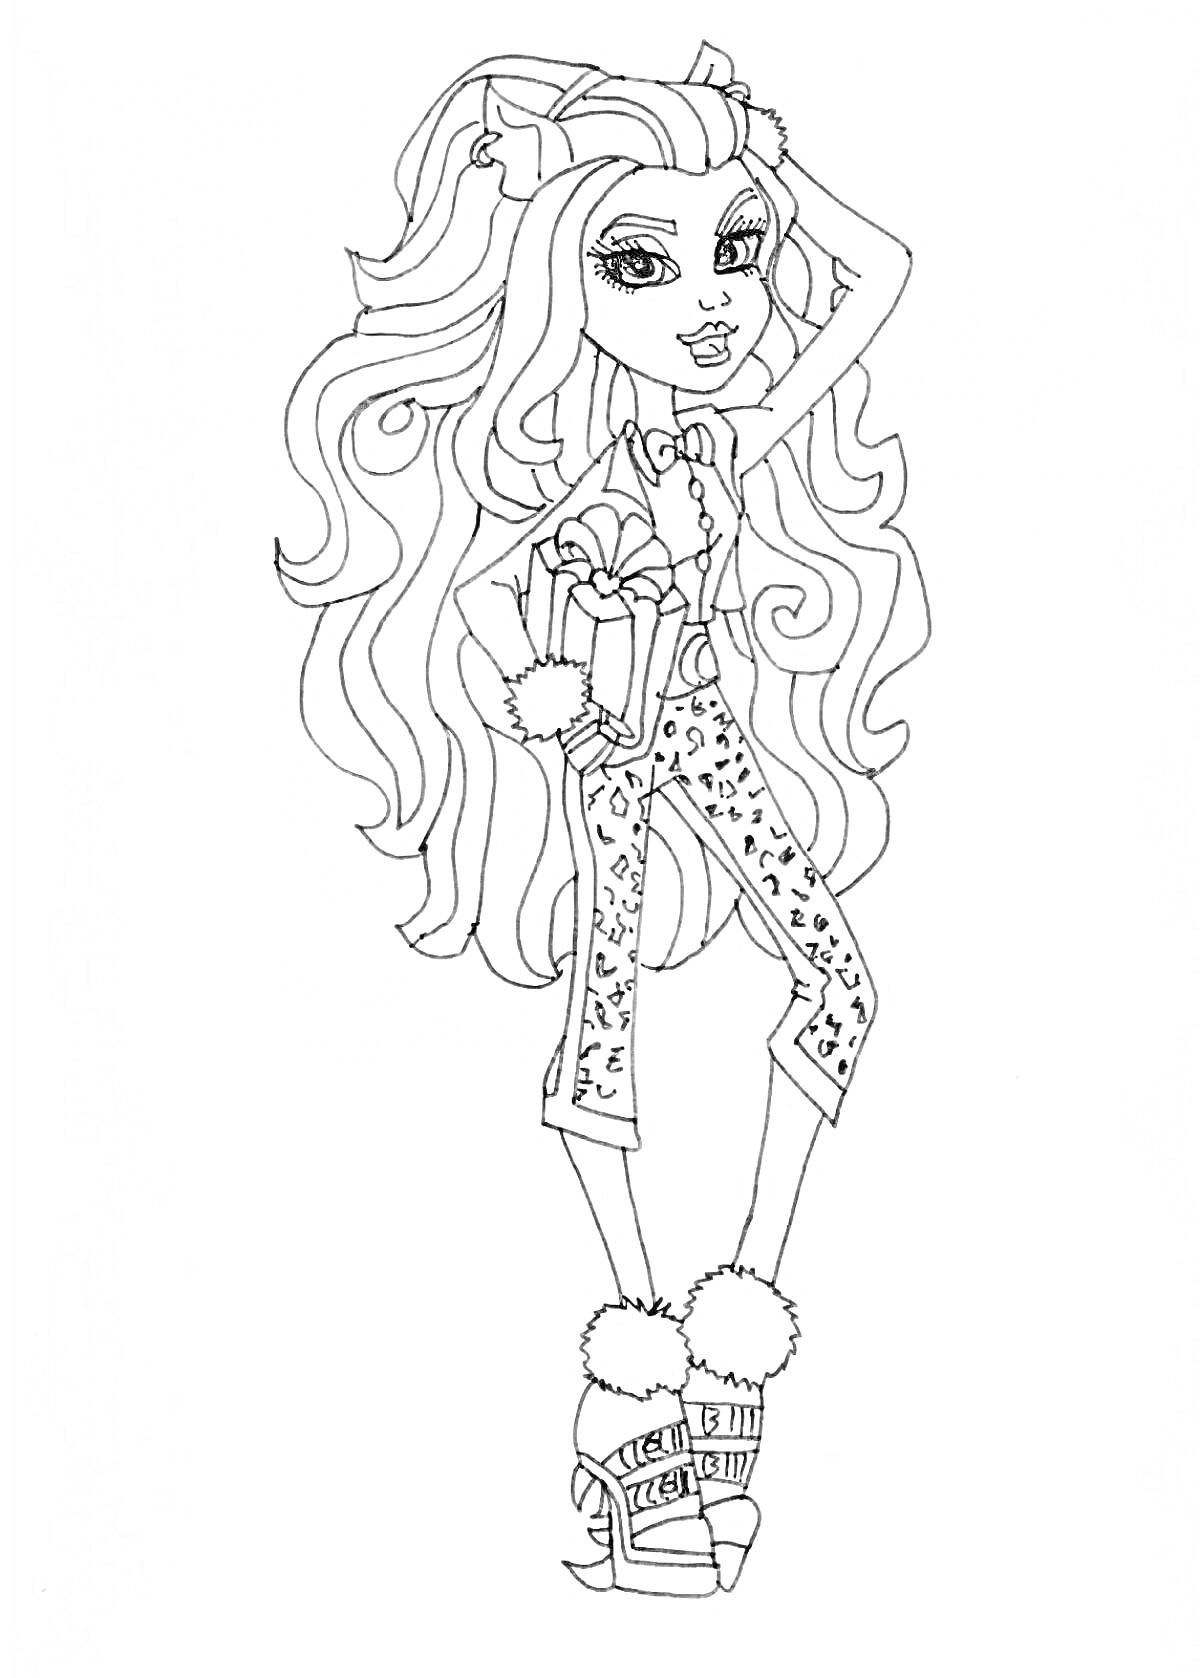 Раскраска Девушка Монстр Хай с длинными волосами, с бантом и меховой оправой, в леопардовых штанах и туфлях с мехом, стоит в полный рост, с одной рукой поднятой к голове.